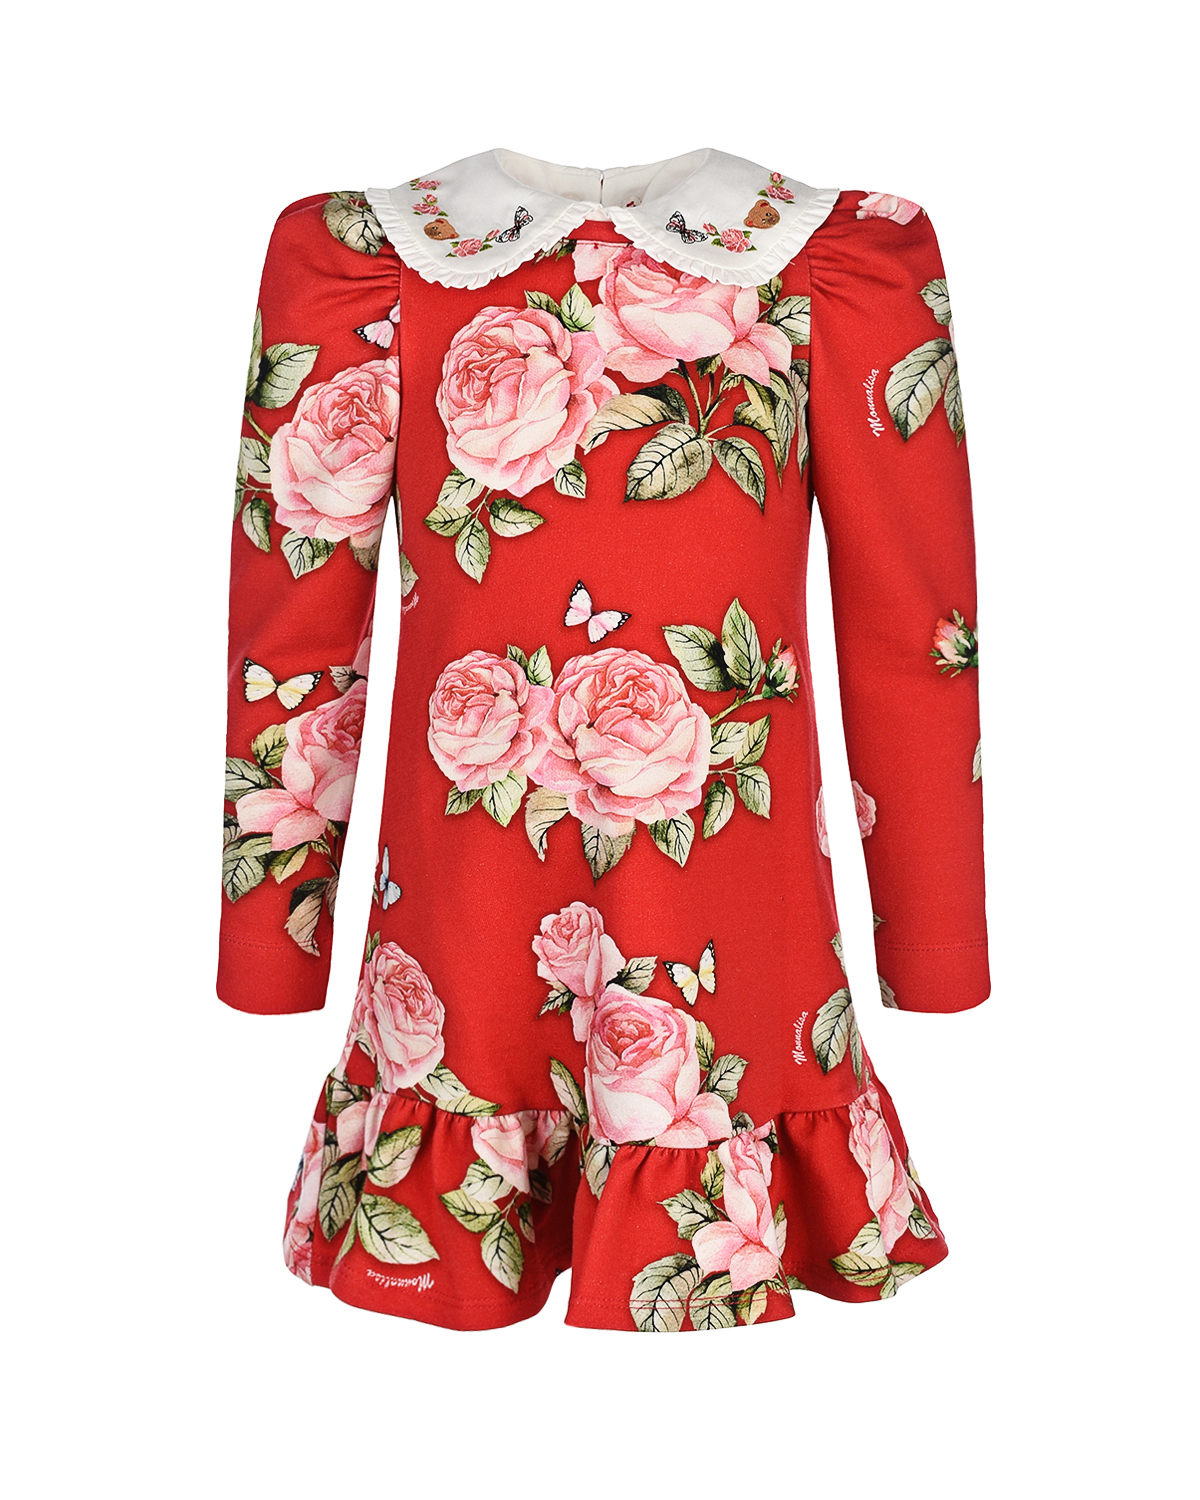 Платье с принтом "розы" Monnalisa детское, размер 110, цвет красный - фото 1